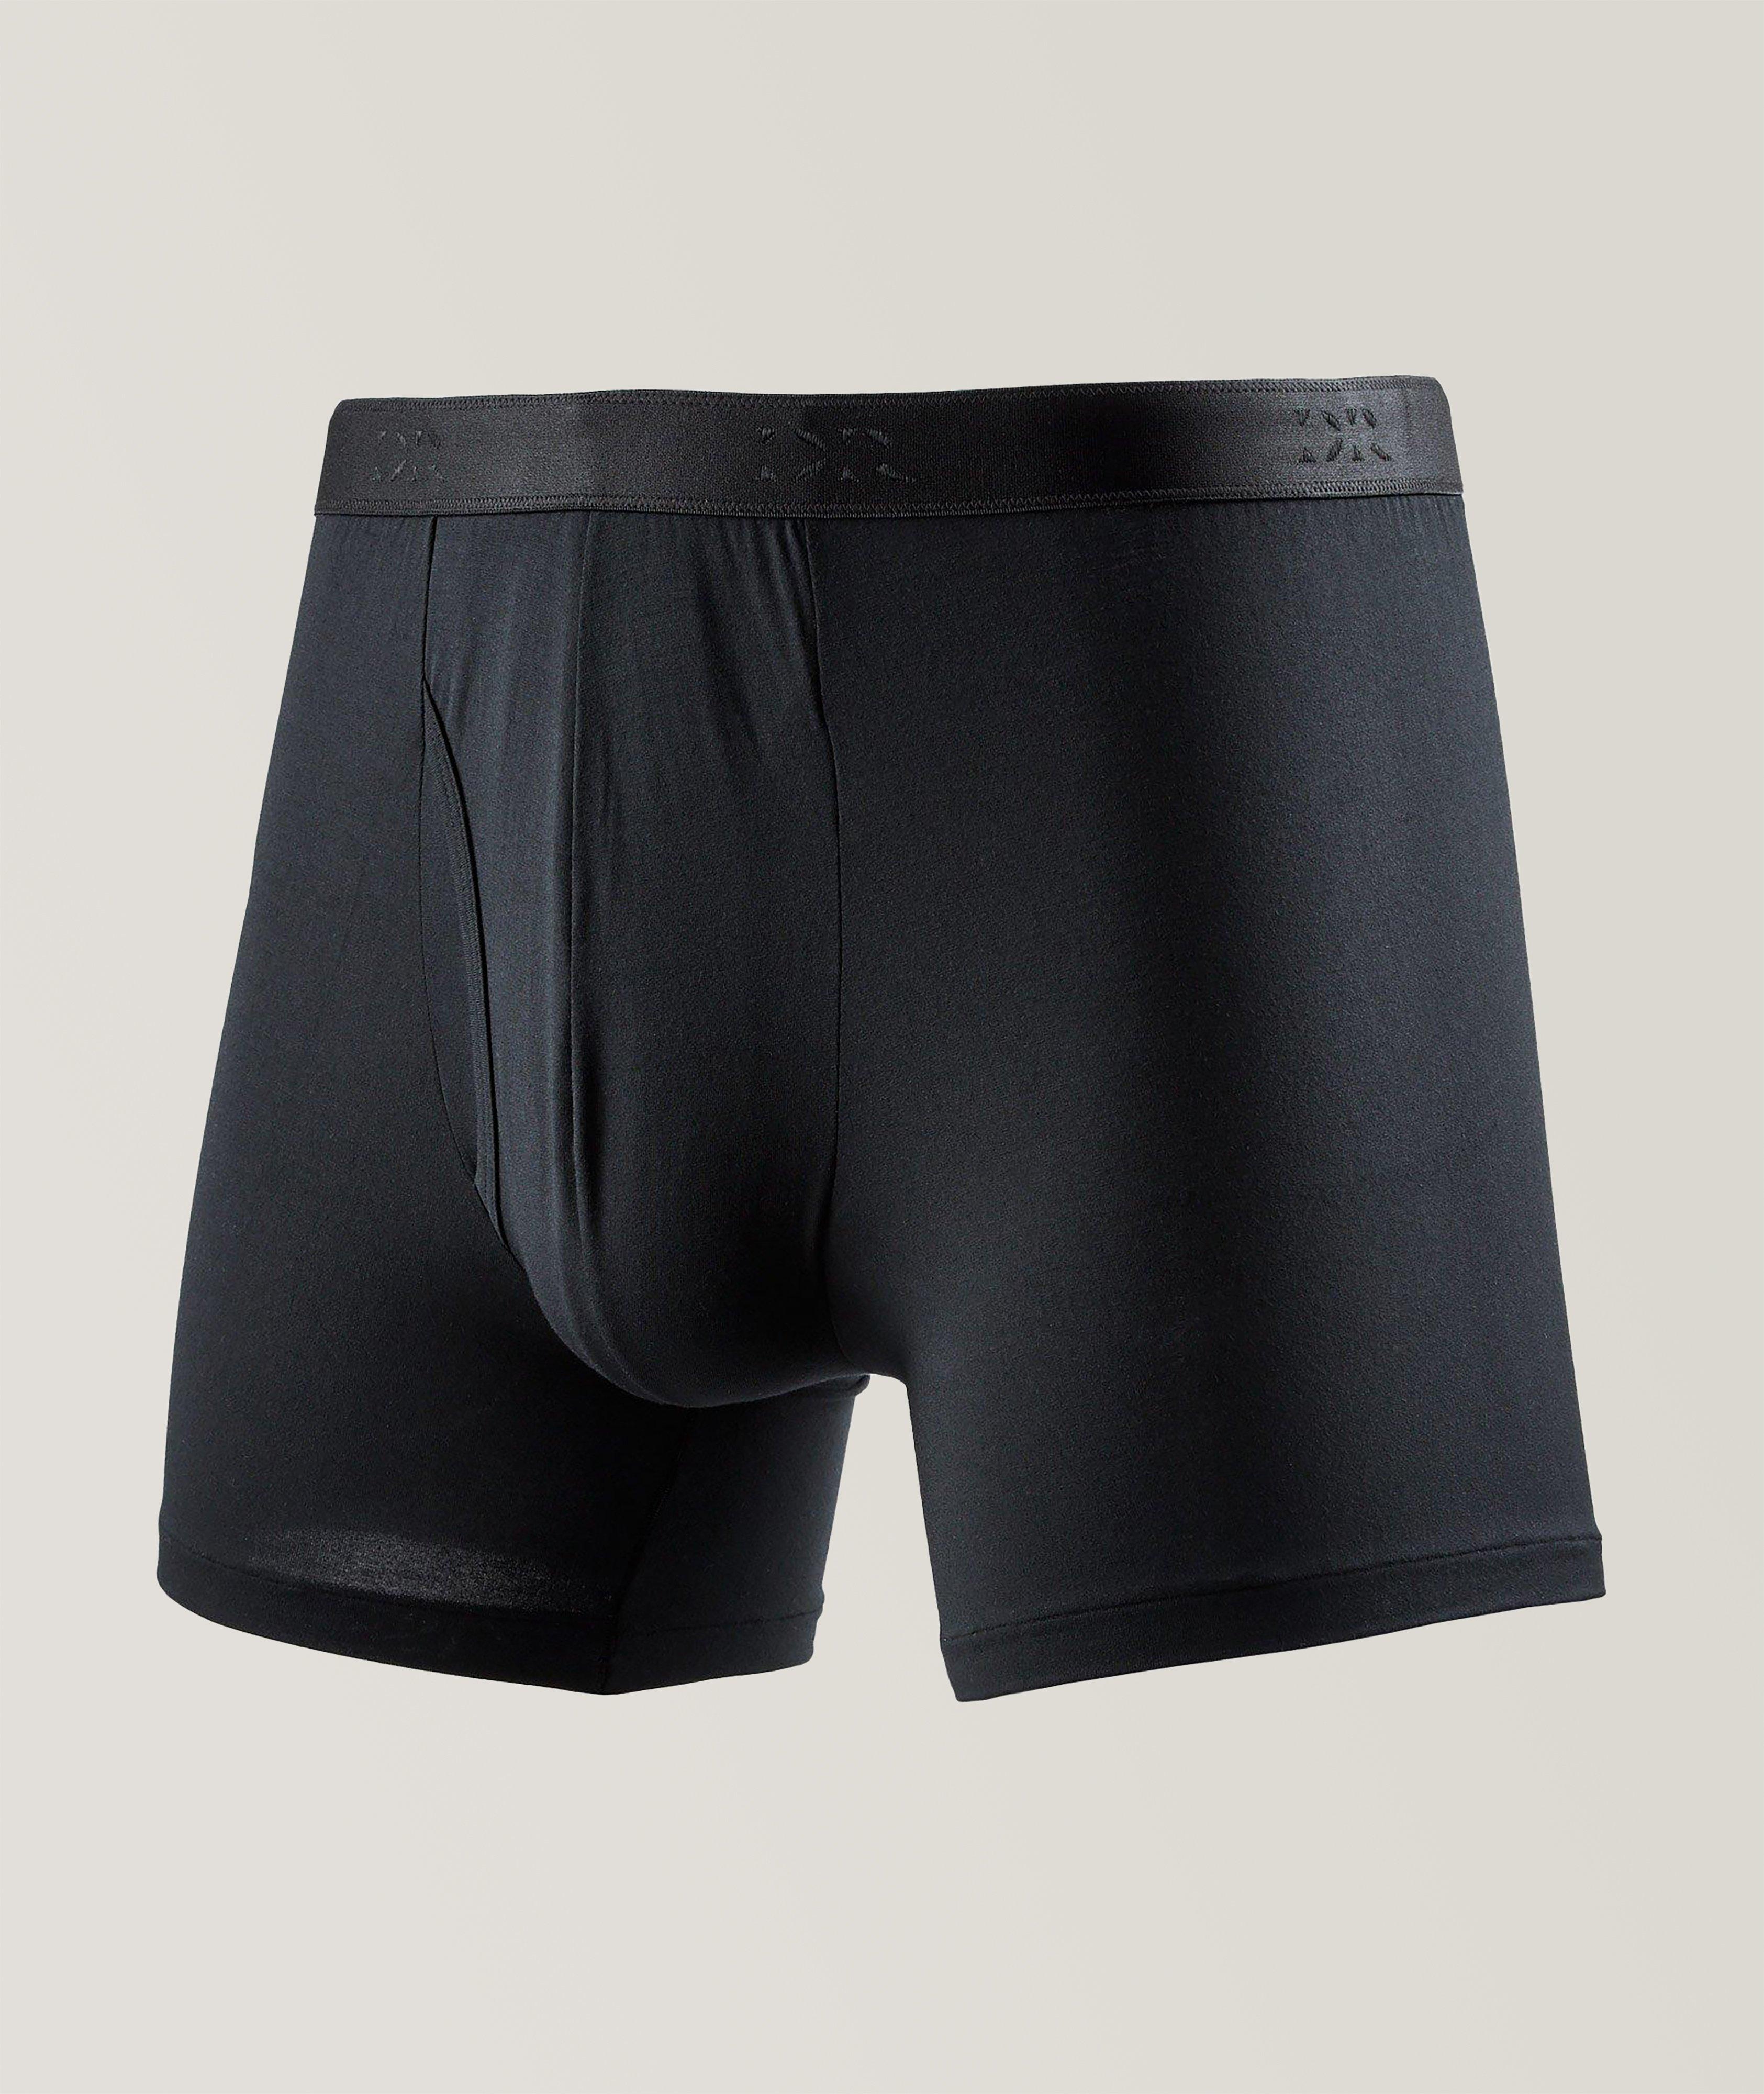 Derek Rose Stretch-Micro Modal Boxer Briefs, Underwear